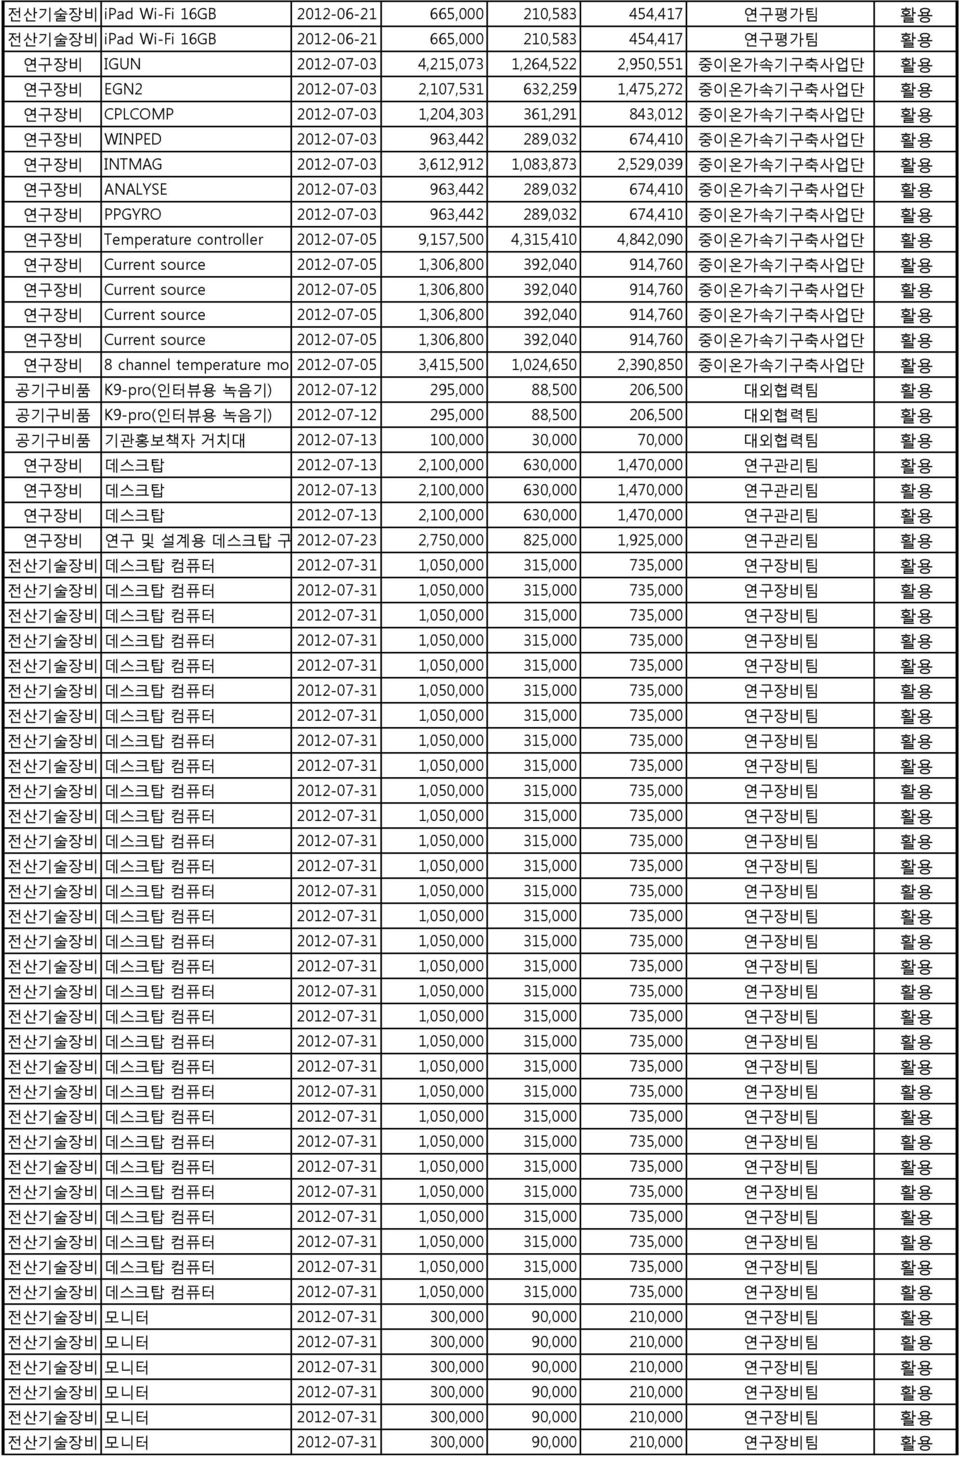 INTMAG 2012-07-03 3,612,912 1,083,873 2,529,039 중이온가속기구축사업단 활용 연구장비 ANALYSE 2012-07-03 963,442 289,032 674,410 중이온가속기구축사업단 활용 연구장비 PPGYRO 2012-07-03 963,442 289,032 674,410 중이온가속기구축사업단 활용 연구장비